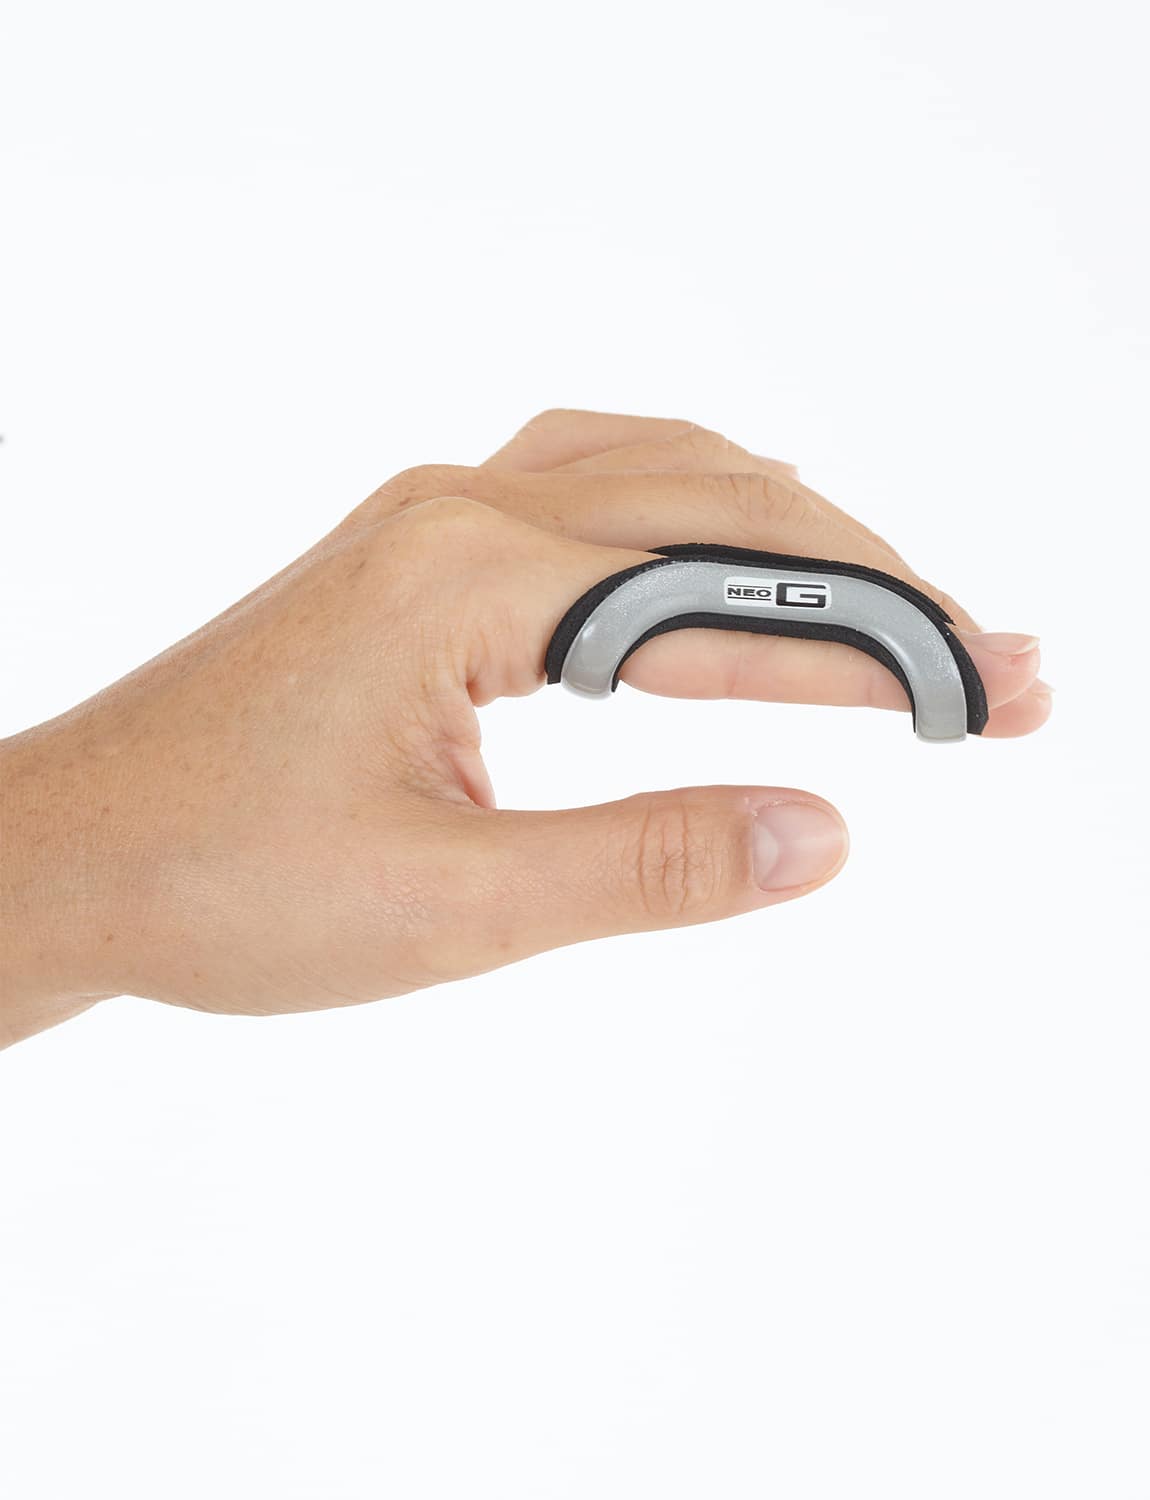 Neo G Easy-Fit Finger Splint  Orthorest Back & Healthcare - Irish